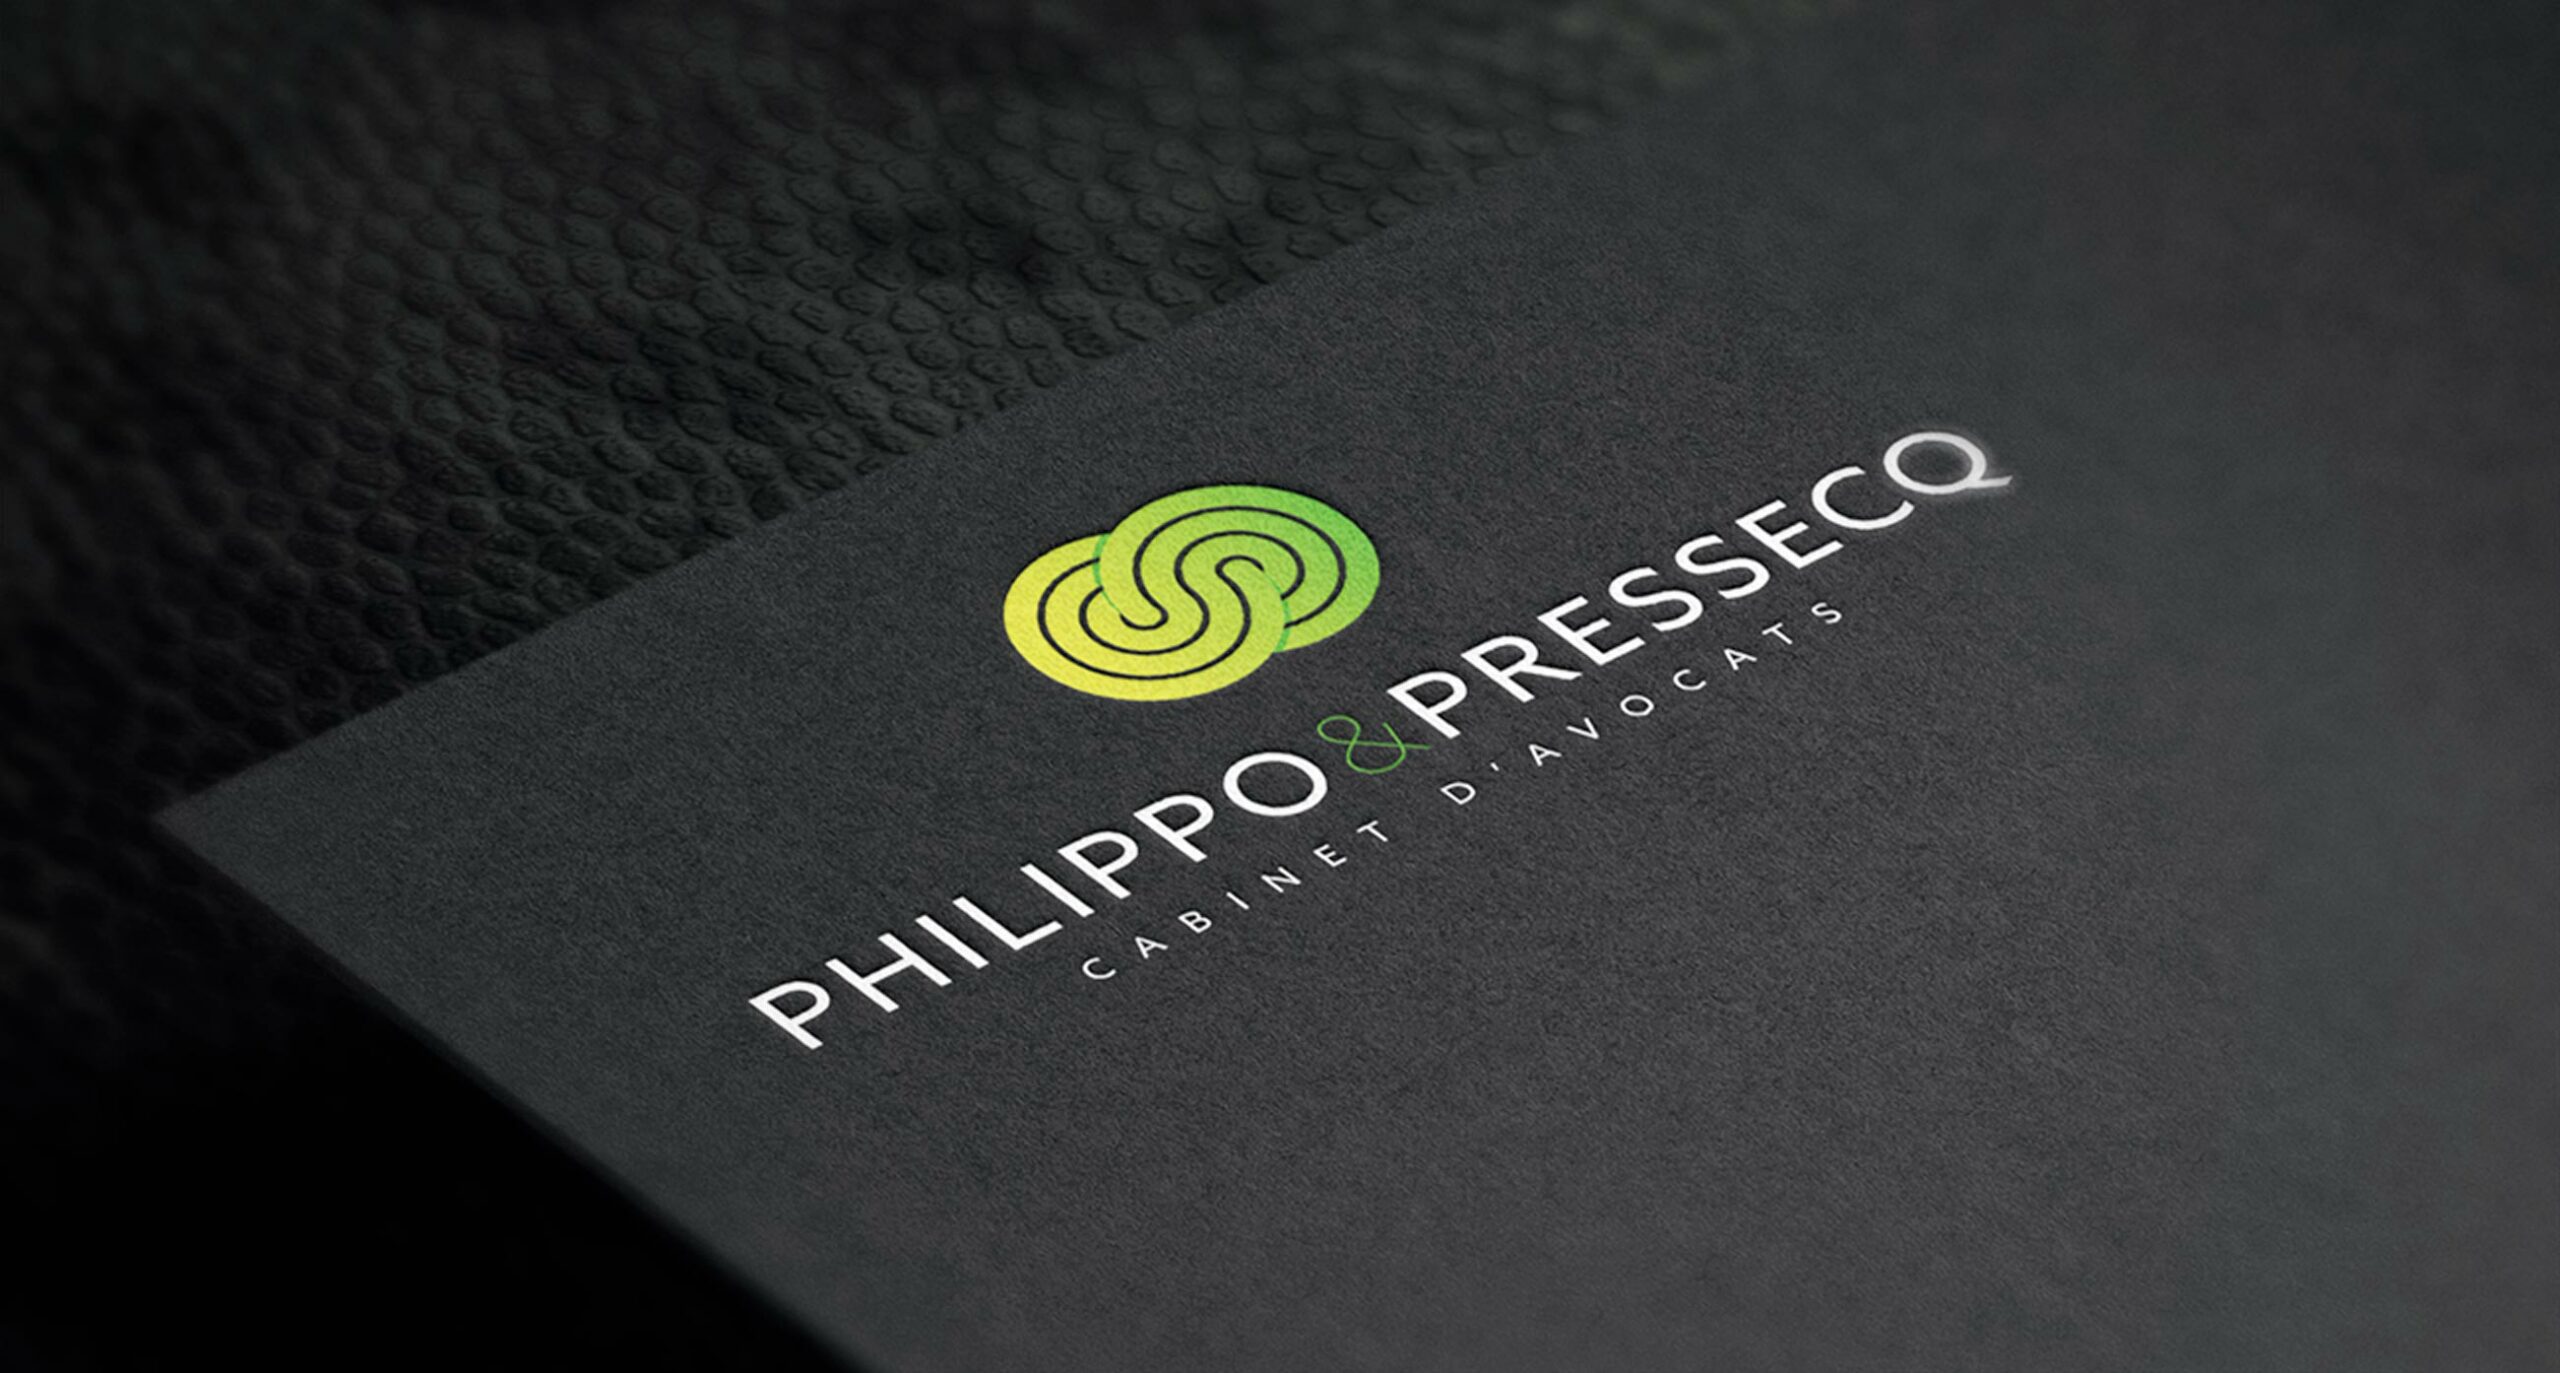 Philippo & Pressecq